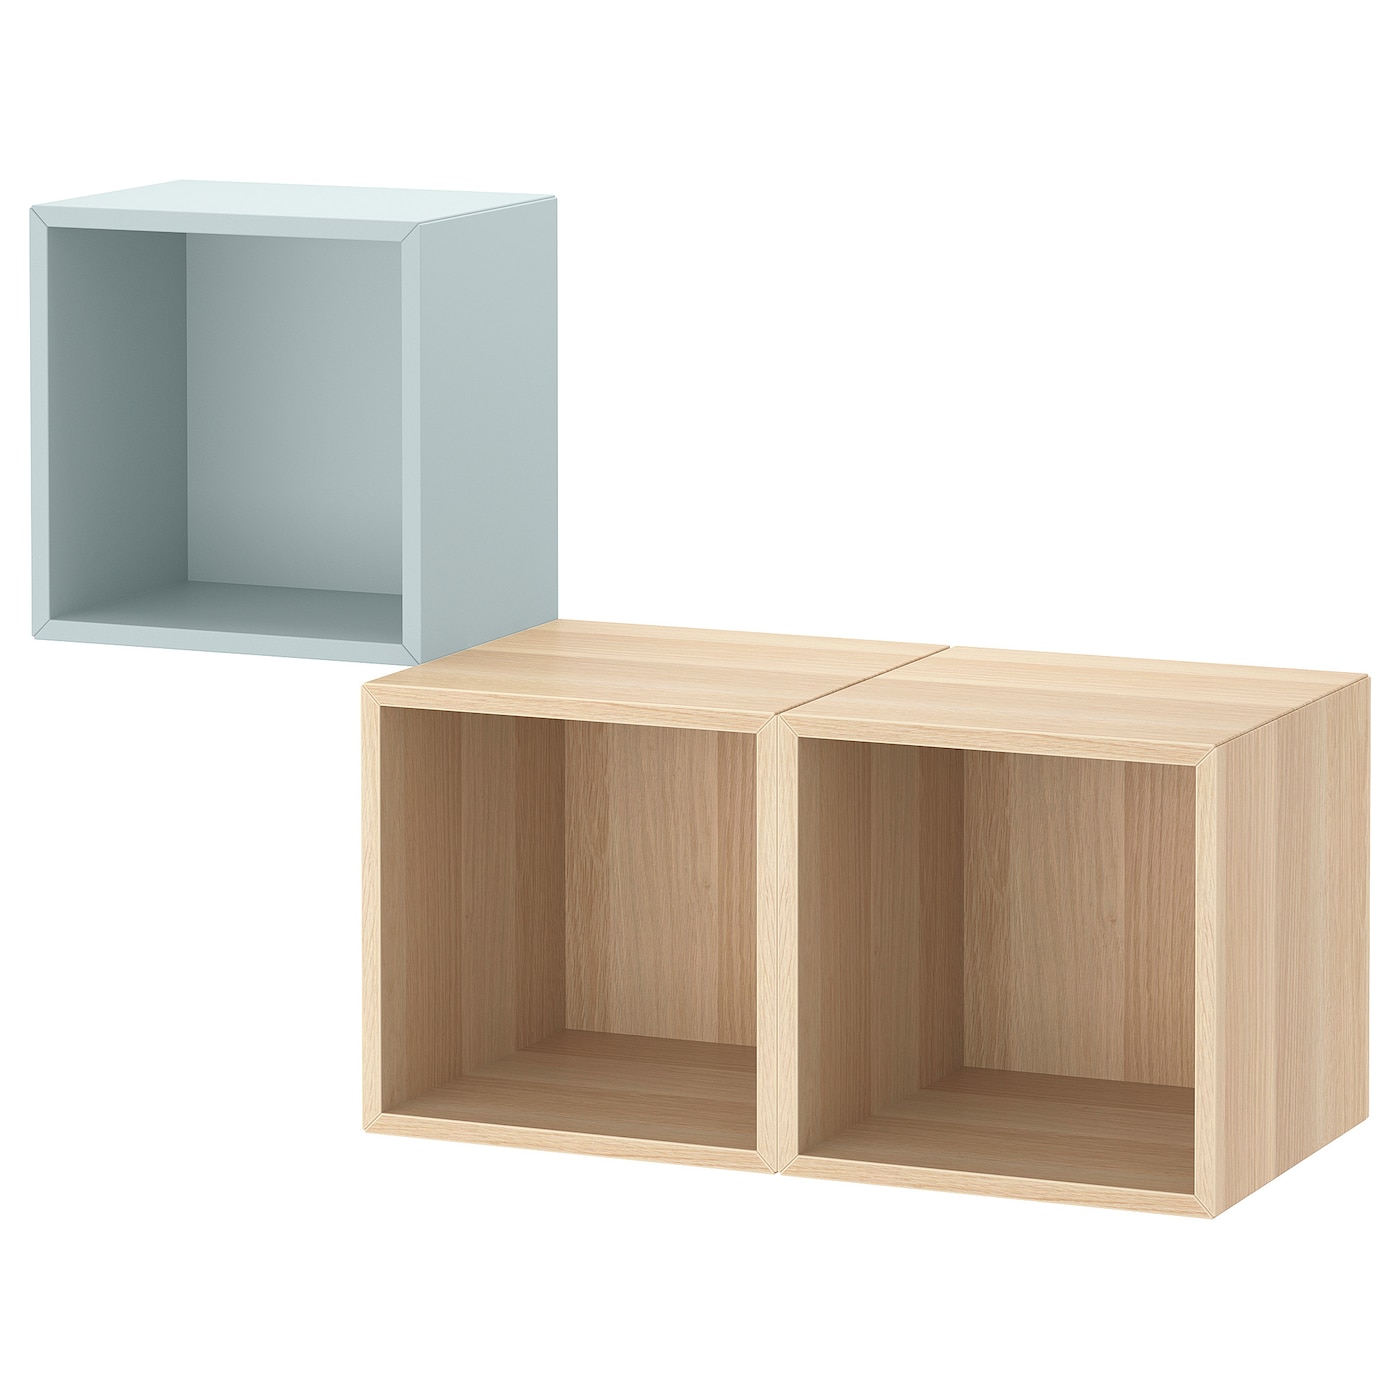 Комбинация для хранения - EKET IKEA/ ЭКЕТ ИКЕА,  105х70 см,  под беленый дуб  /бледно-голубой